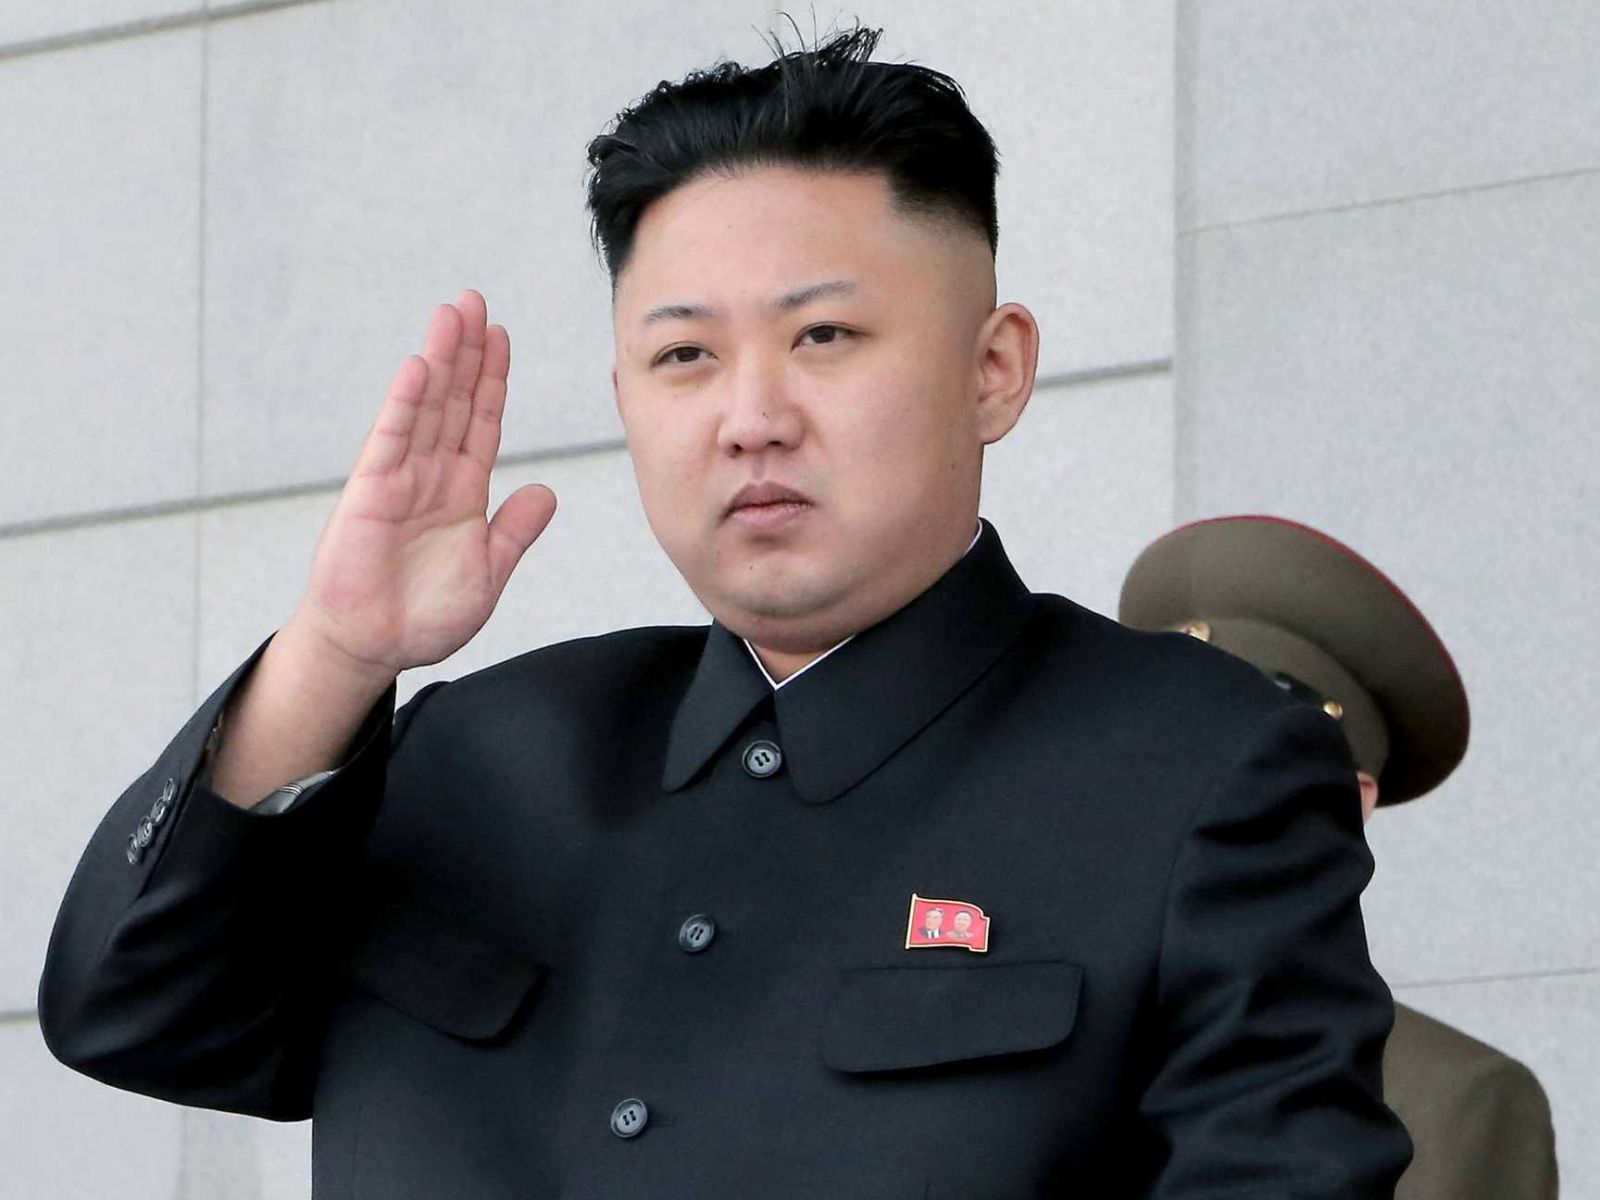 بماذا توعَّد رئيس كوريا الشمالية ليونيل ميسي؟